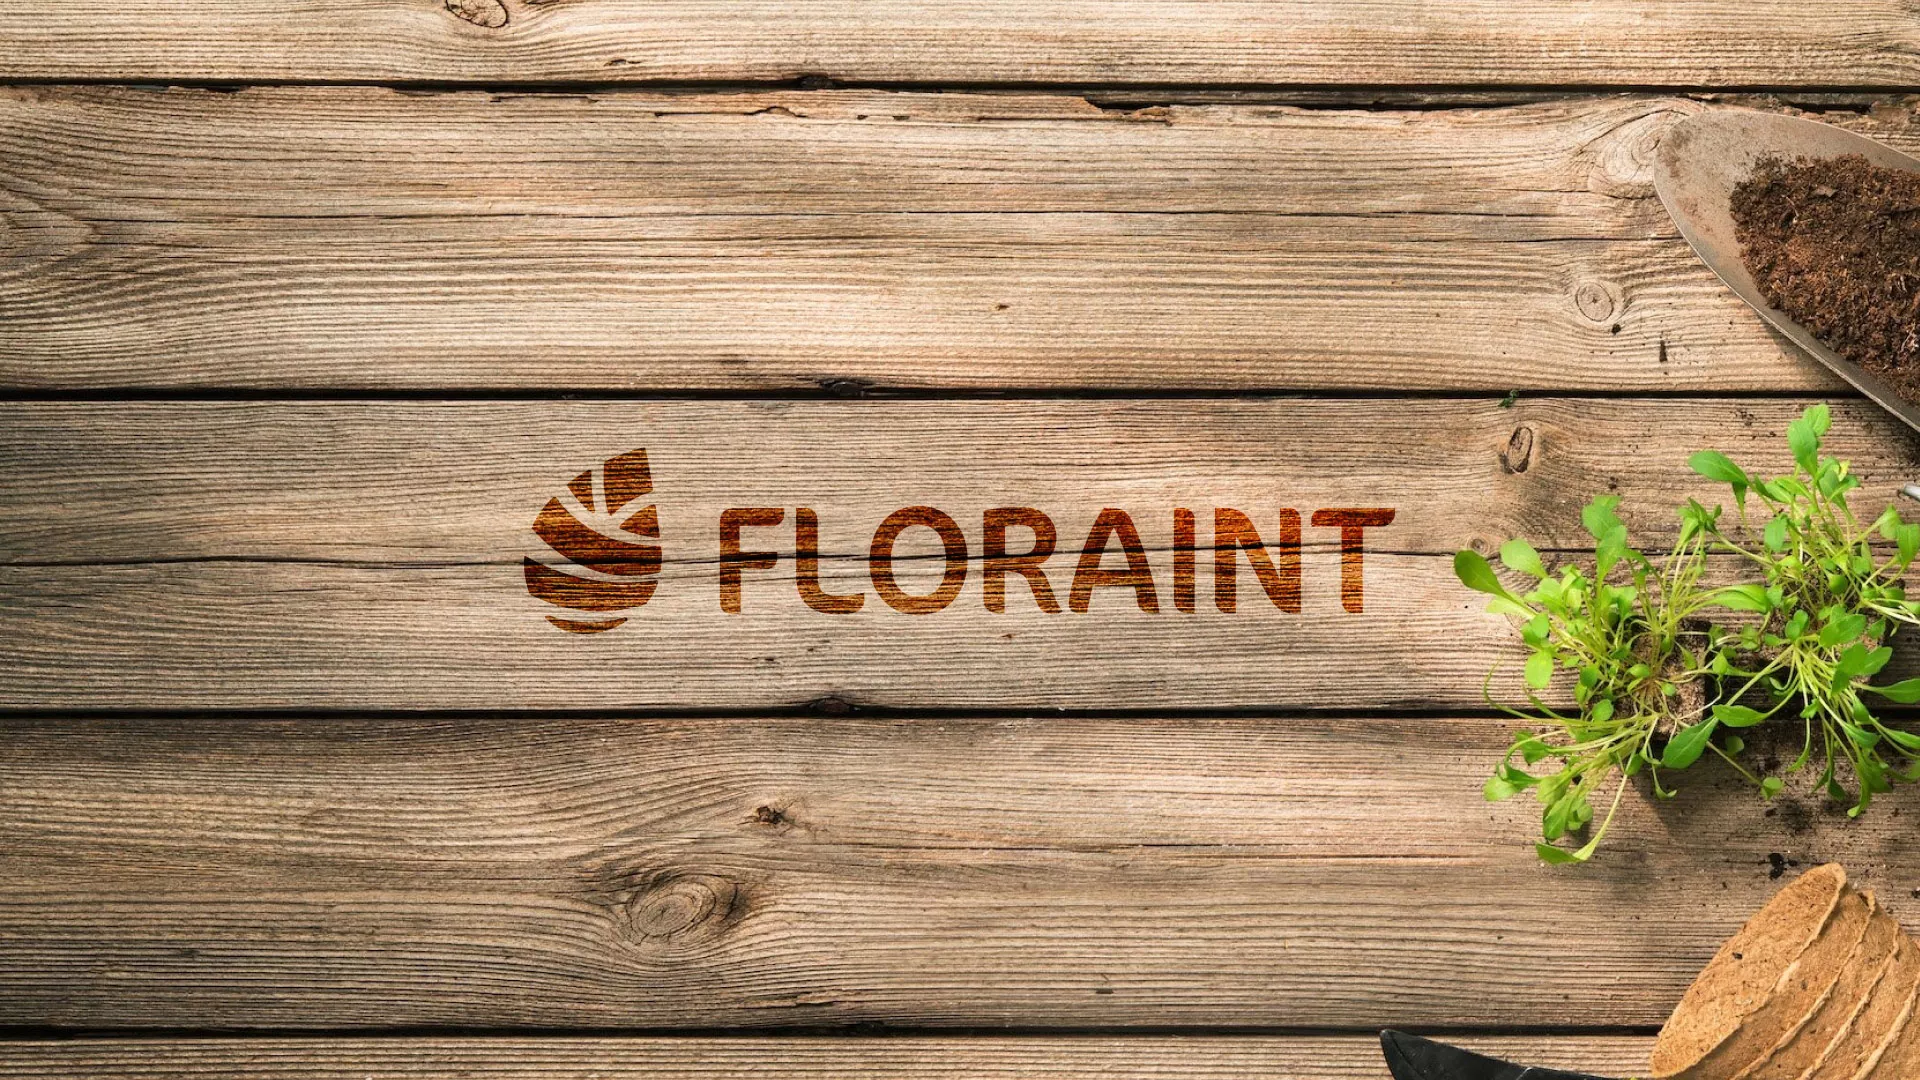 Создание логотипа и интернет-магазина «FLORAINT» в Стародубе